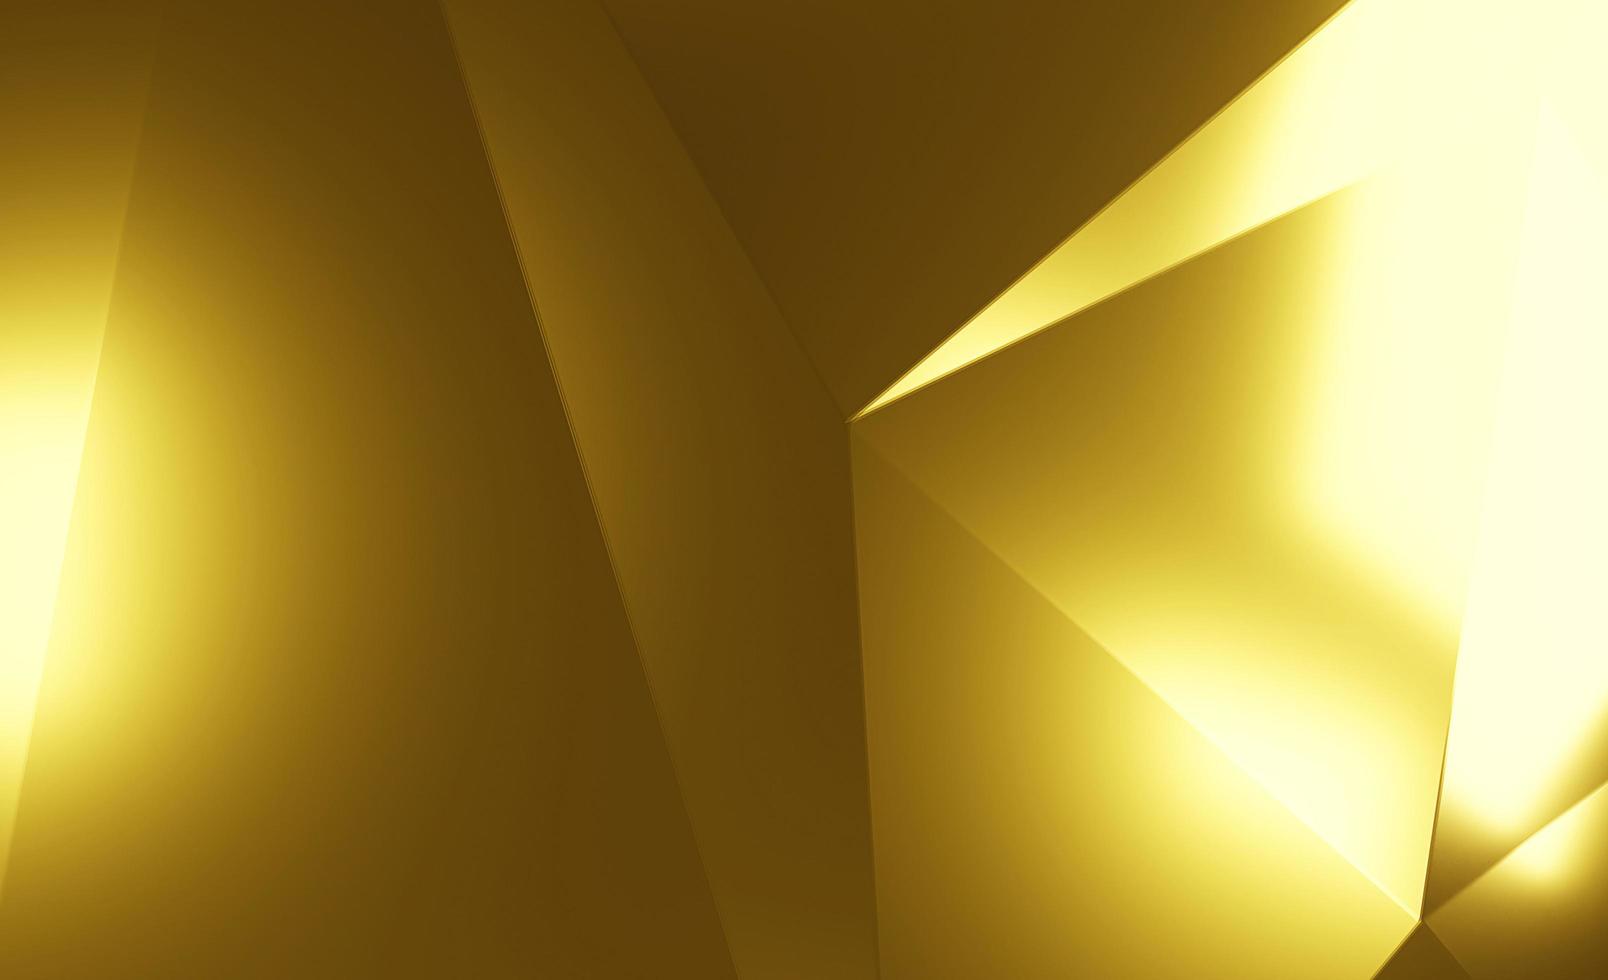 fond de mosaïque abstraite en cristal d'or. illustration géométrique dans un style origami avec dégradé. tout nouveau design. rendu 3d. photo